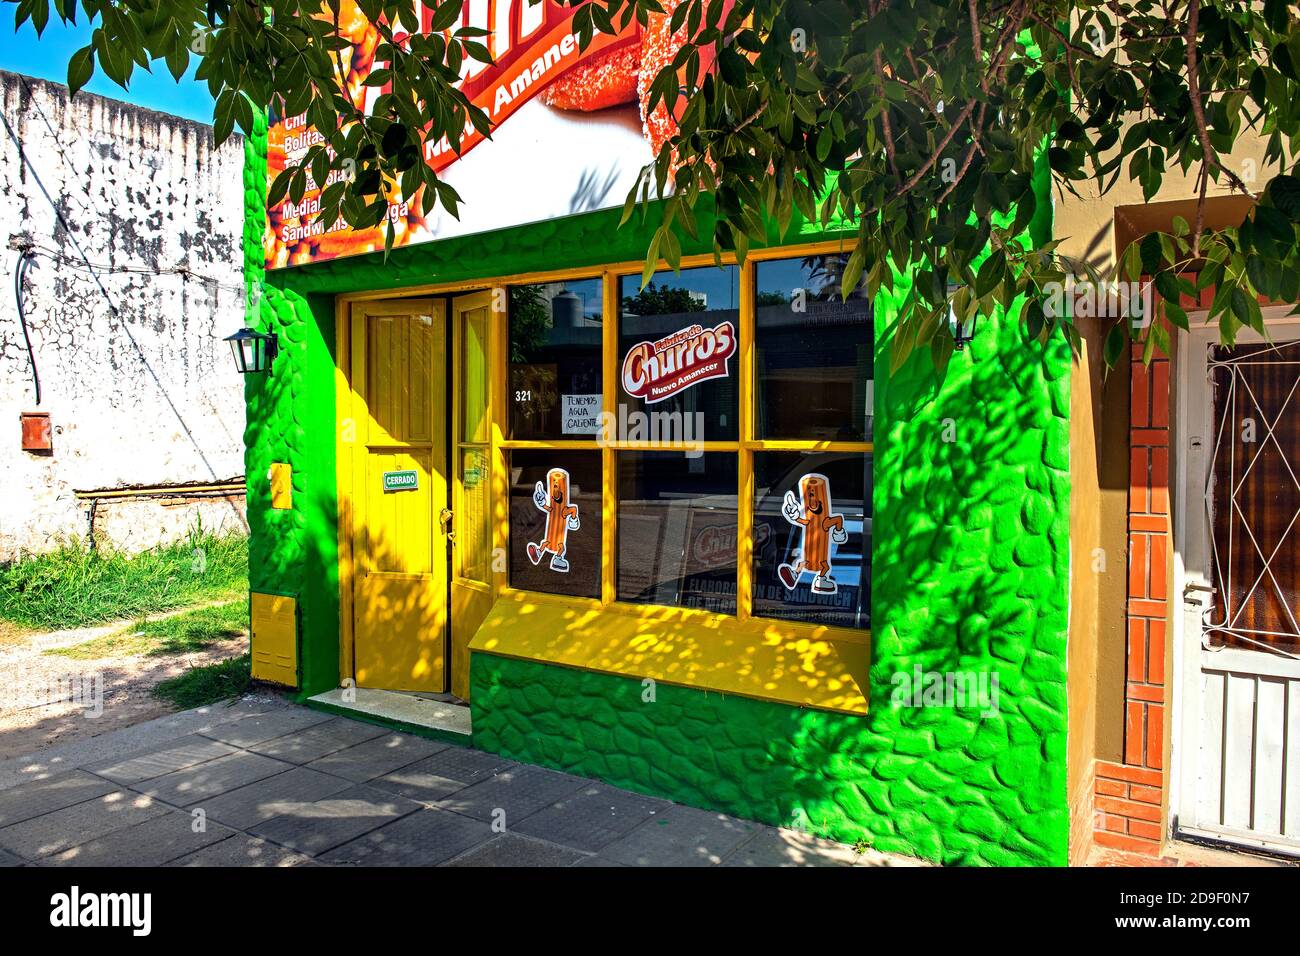 Colon, Entre Rios/ Argentina: Snack bar che vende churros, una specialità dolce nei paesi di lingua spagnola Foto Stock